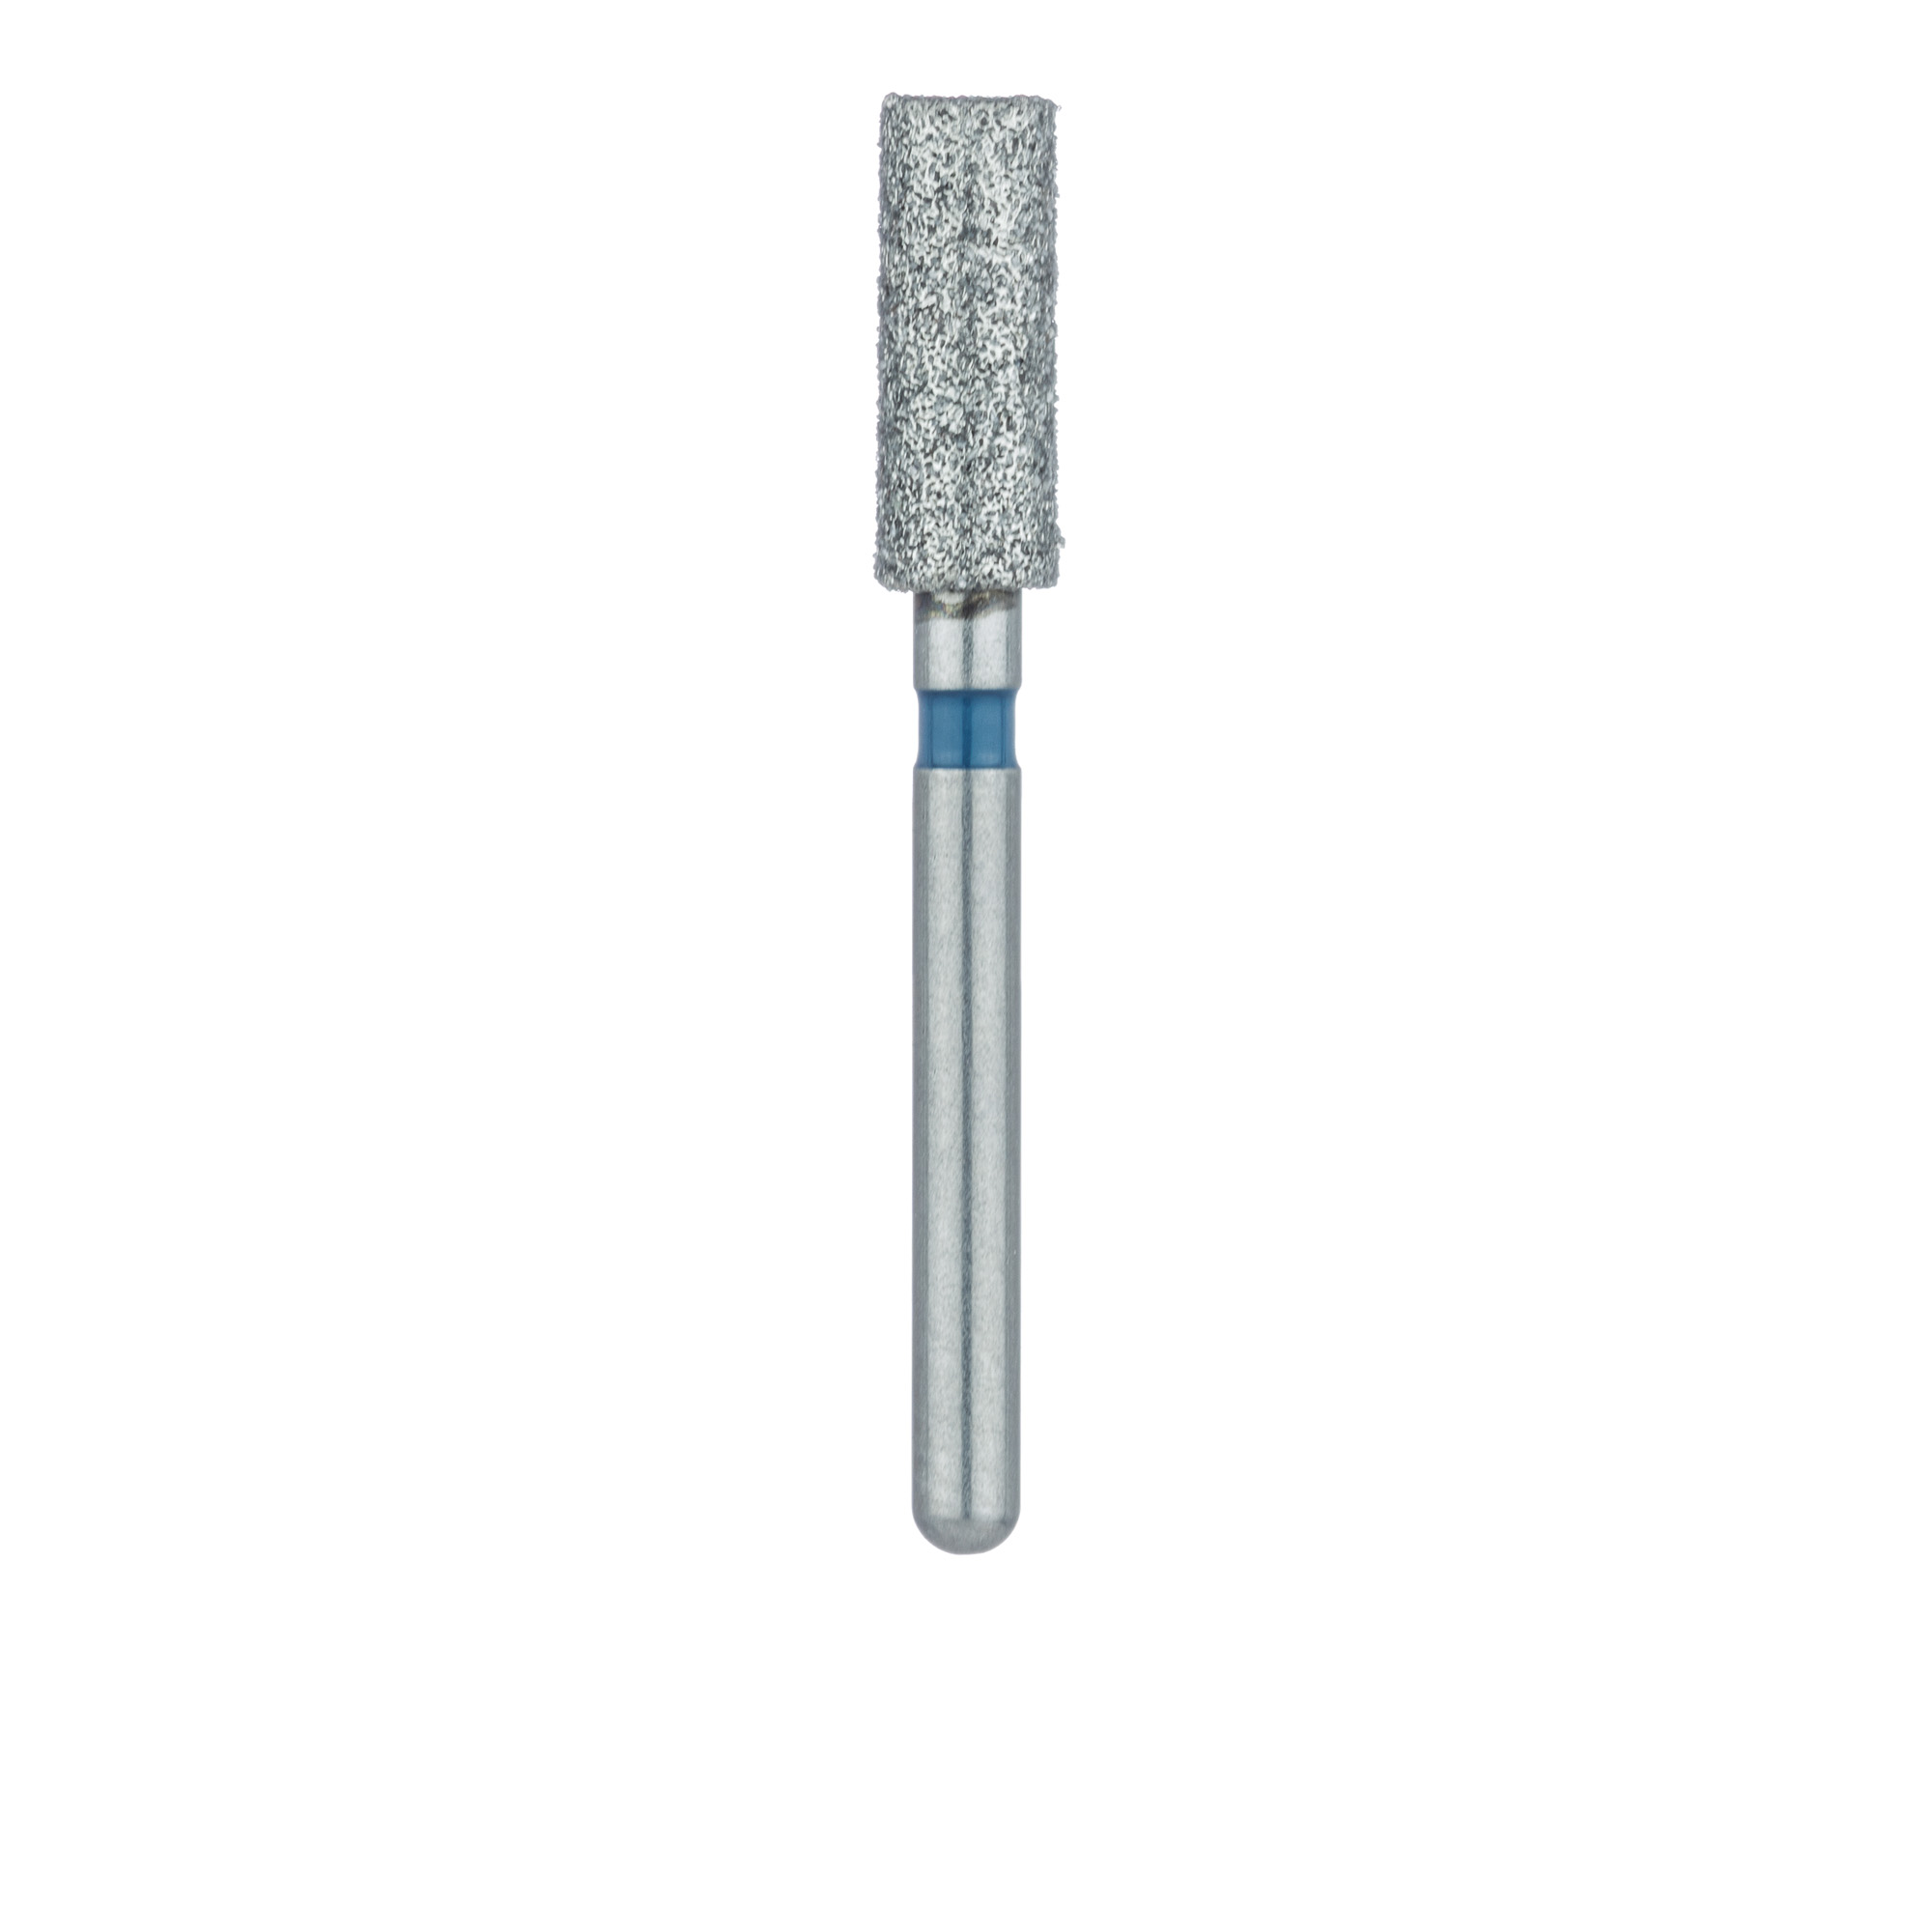 837-027-FG Long Cylinder Diamond Bur, 2.7mm Ø, Medium, FG